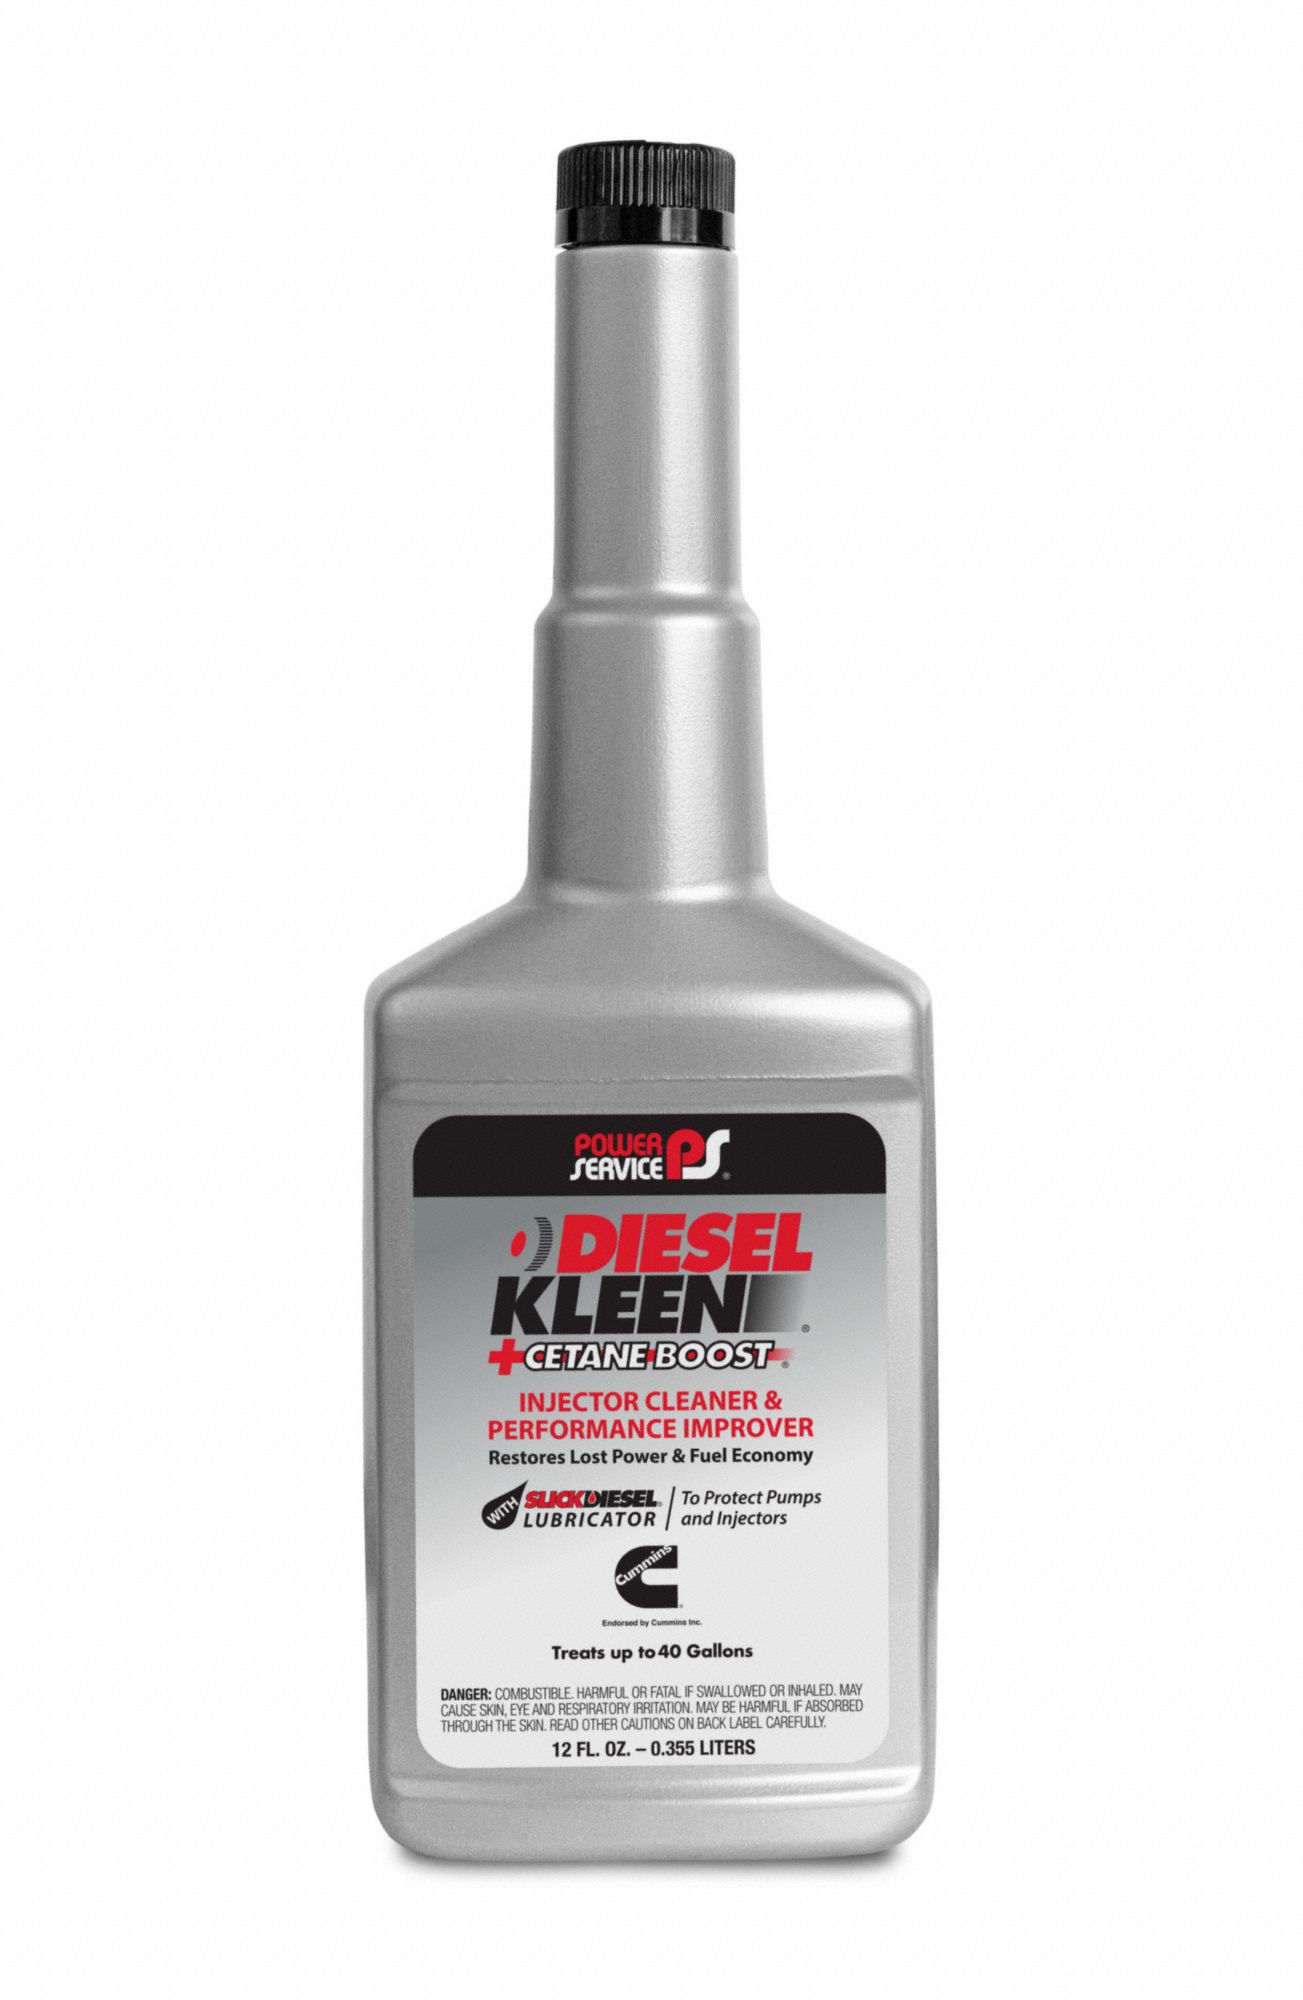 Diesel System Cleaner and Cetane Booster: Diesel Kleen +Cetane Boost, Brown